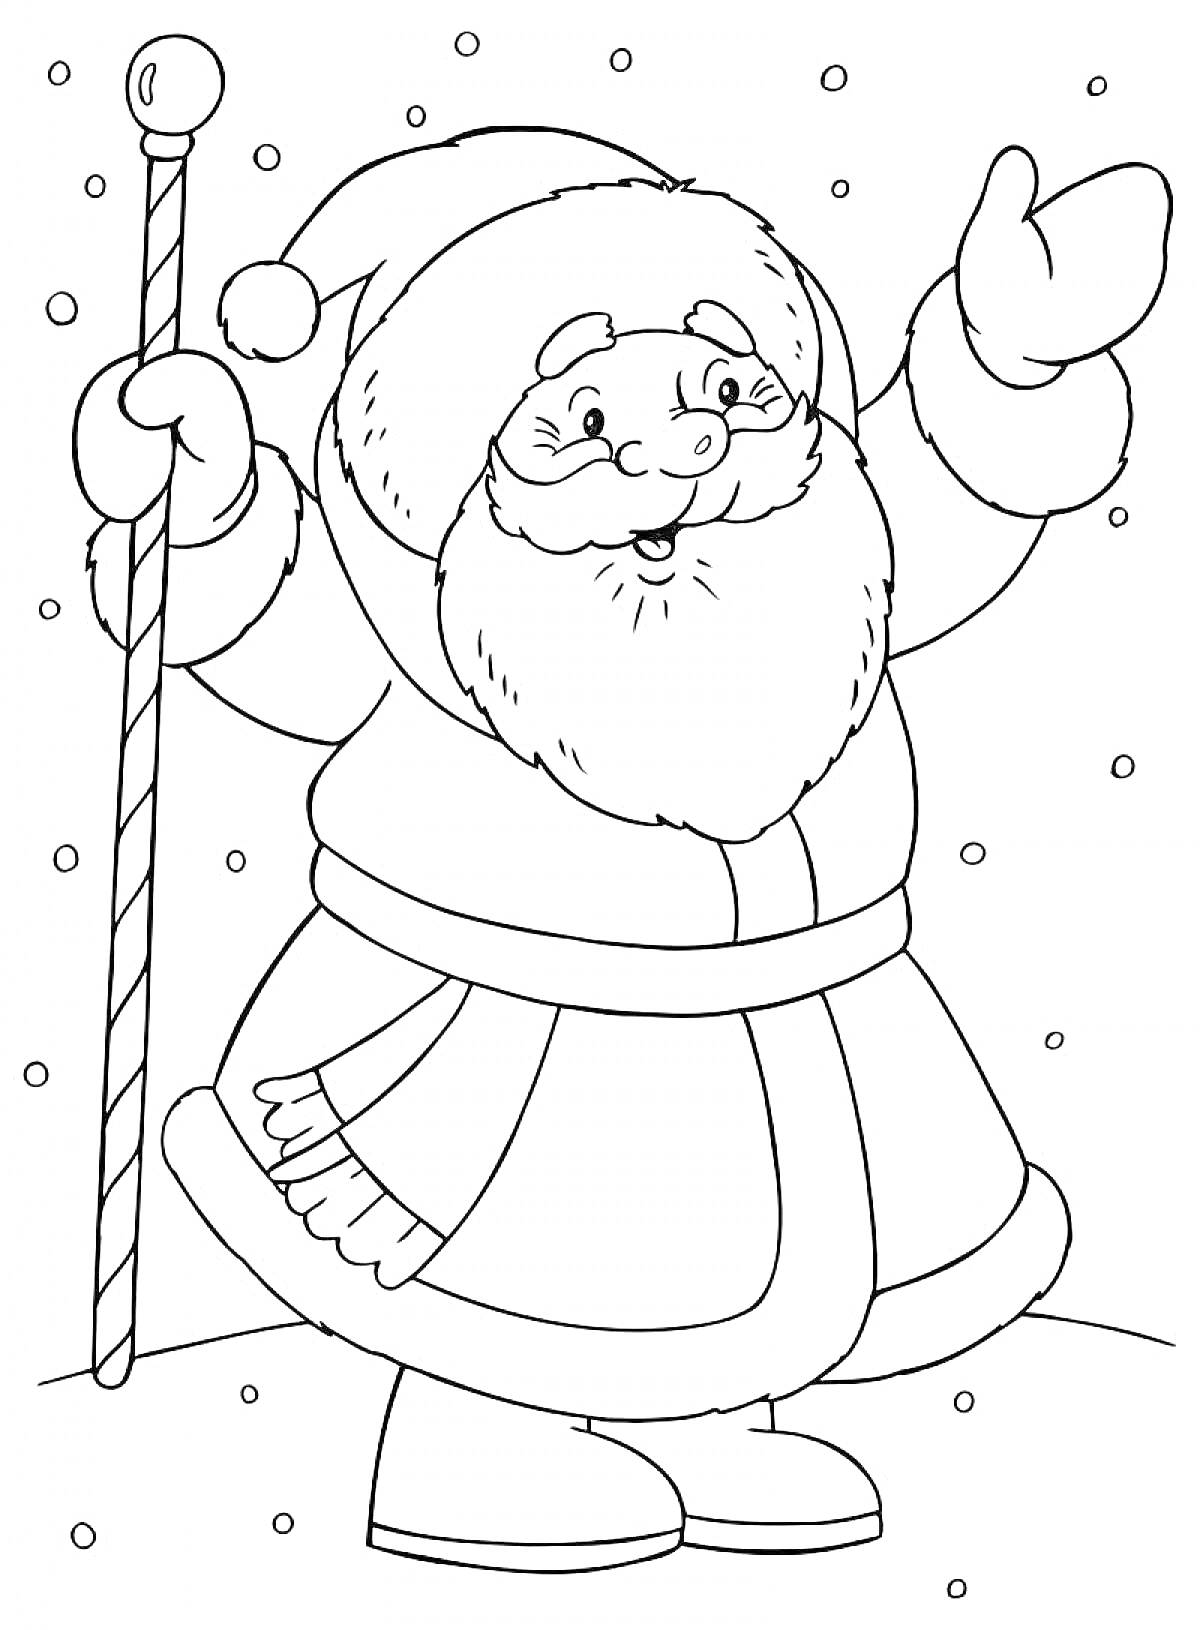 Раскраска Дед Мороз в шапке с помпоном и посохом в руке, стоящий на снегу